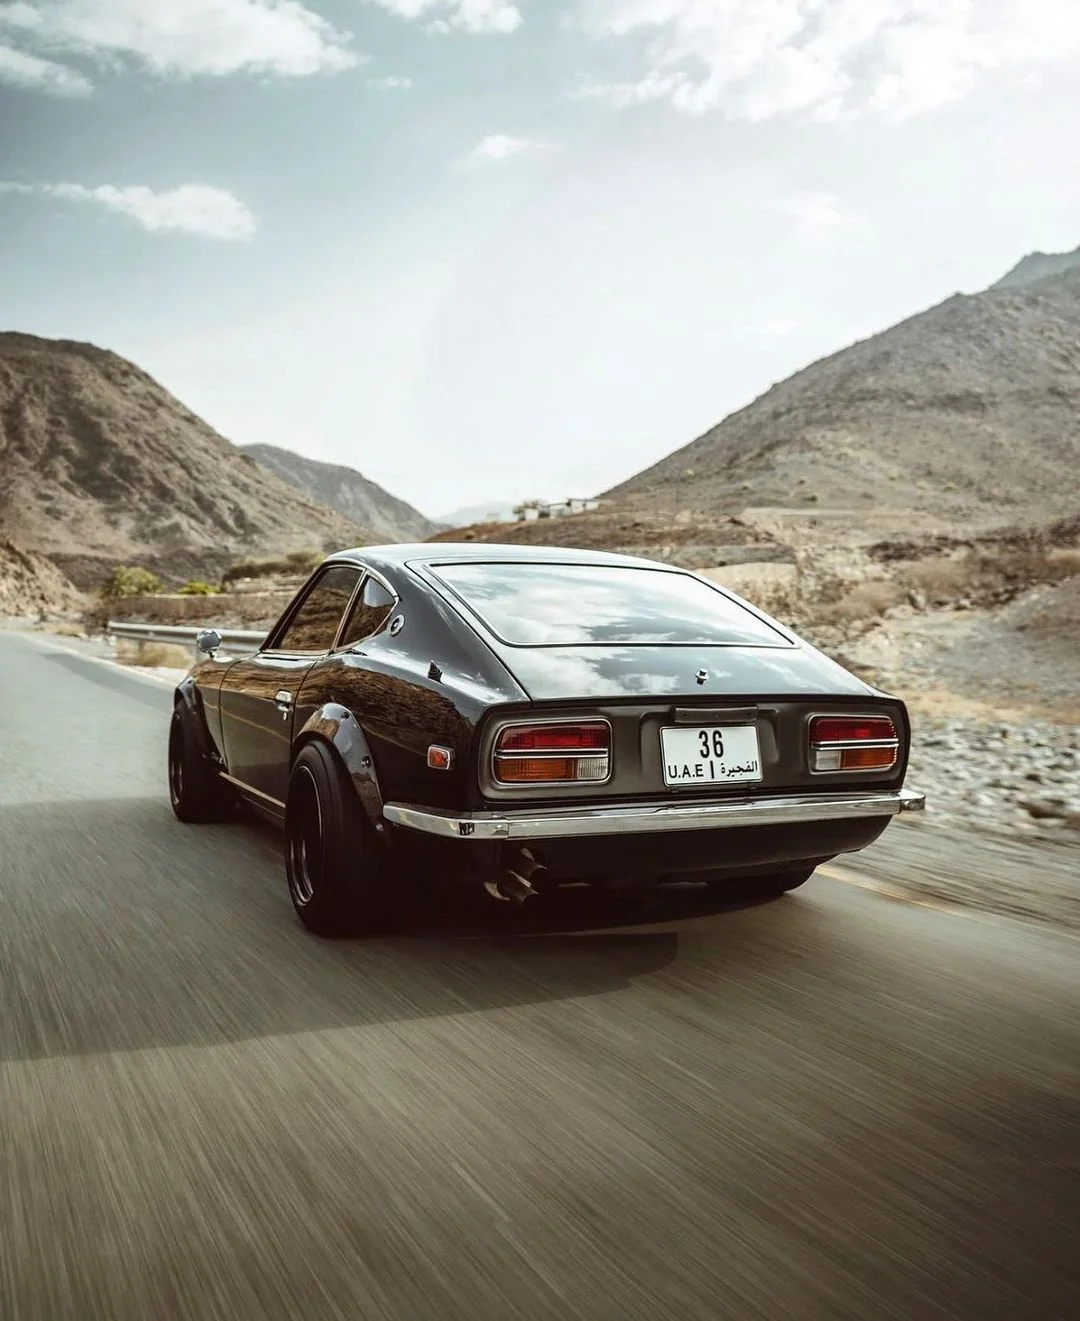 Instagram Classic Car Photo